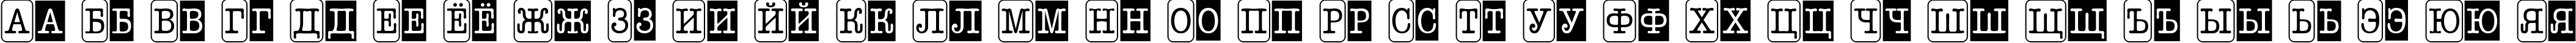 Пример написания русского алфавита шрифтом a_OldTyperNrCmCmb3